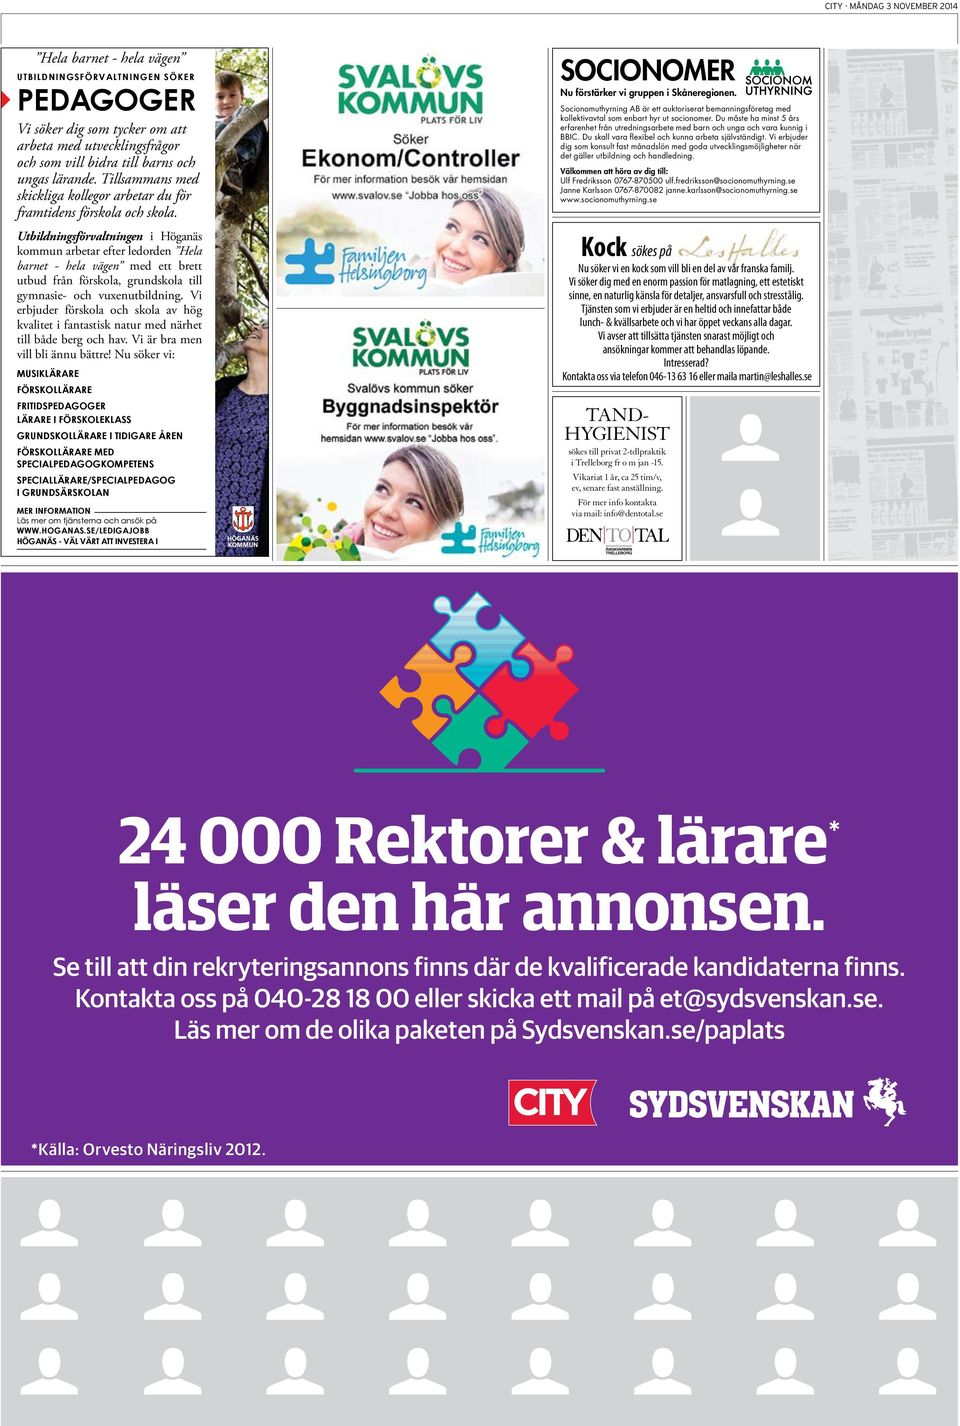 Utbildningsförvaltningen i Höganäs kommun arbetar efter ledorden Hela barnet - hela vägen med ett brett utbud från förskola, grundskola till gymnasie- och vuxenutbildning.